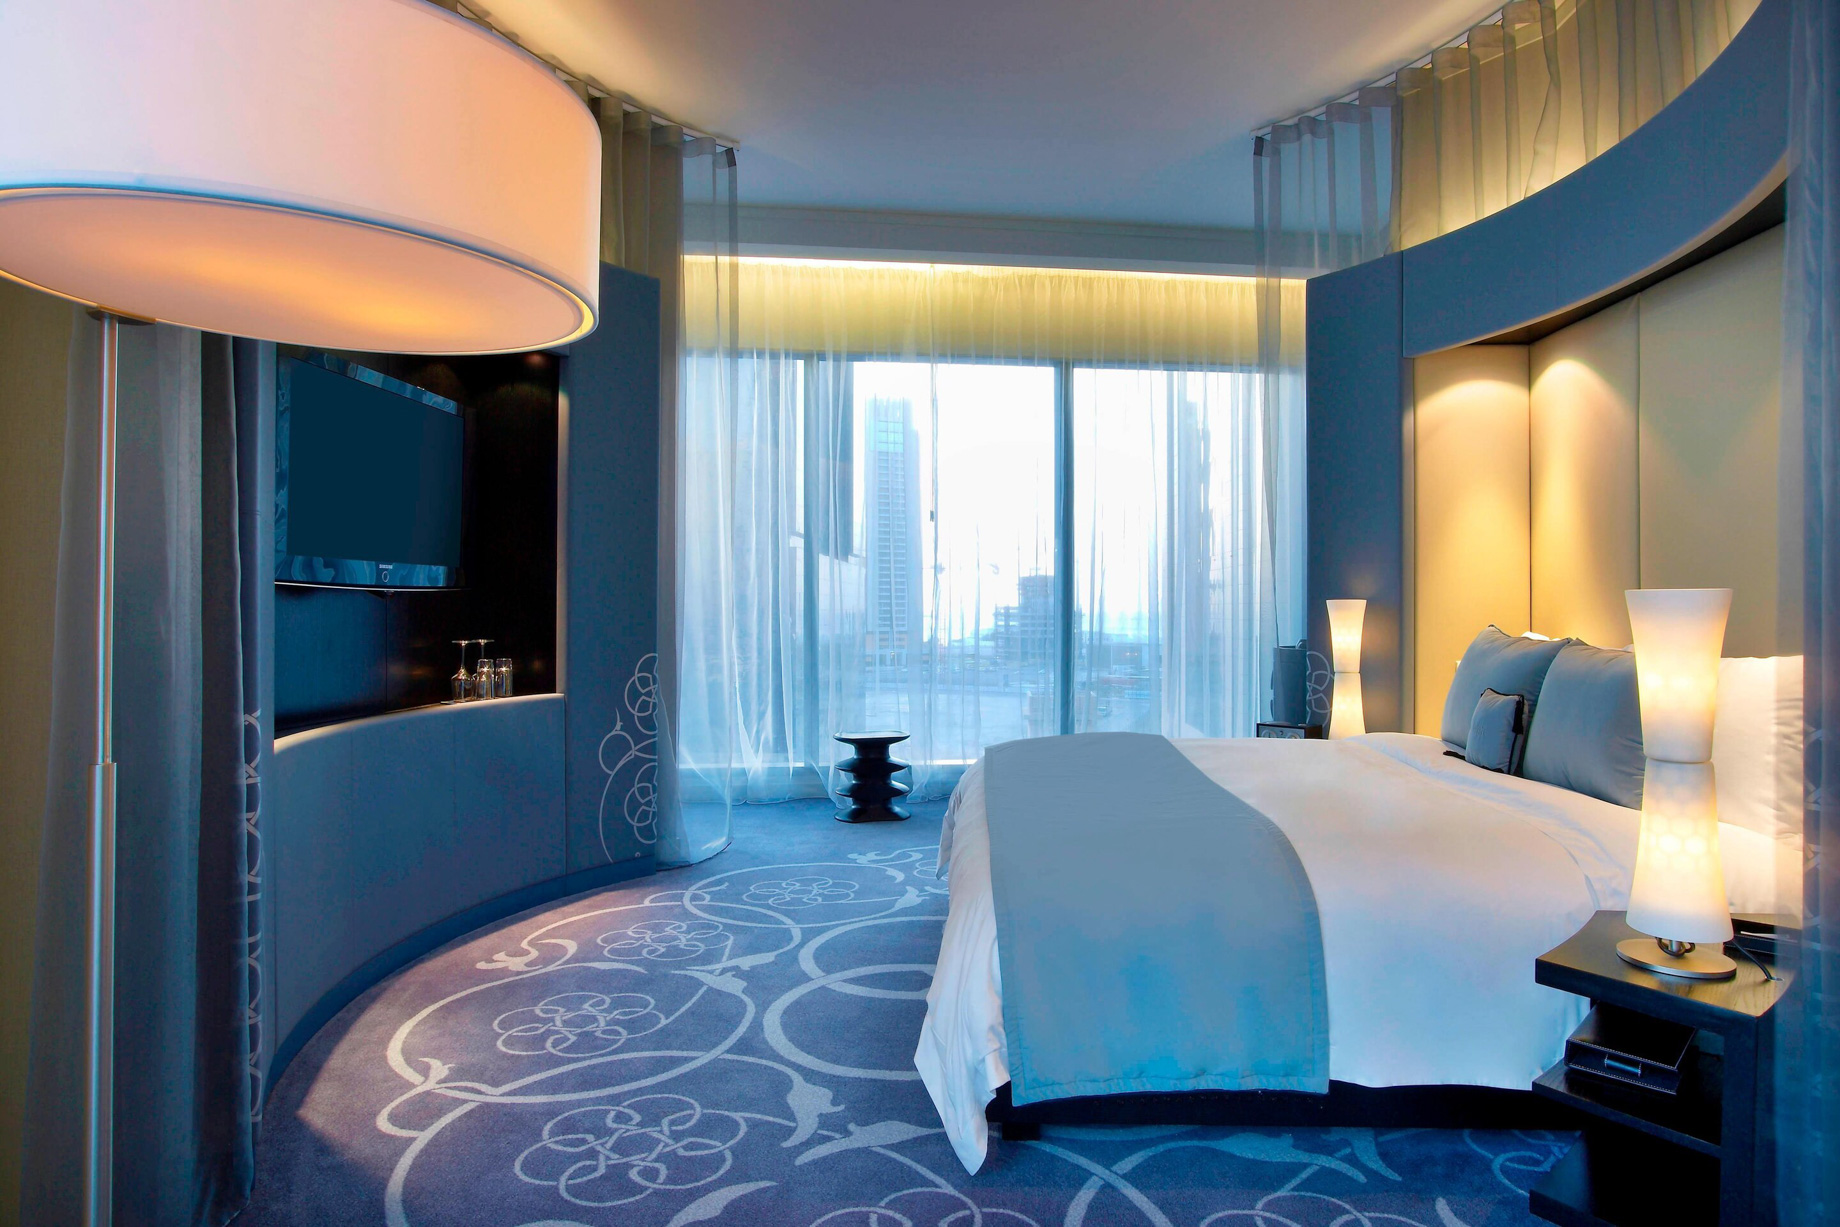 W Doha Hotel - Doha, Qatar - Spectacular Room Bedroom